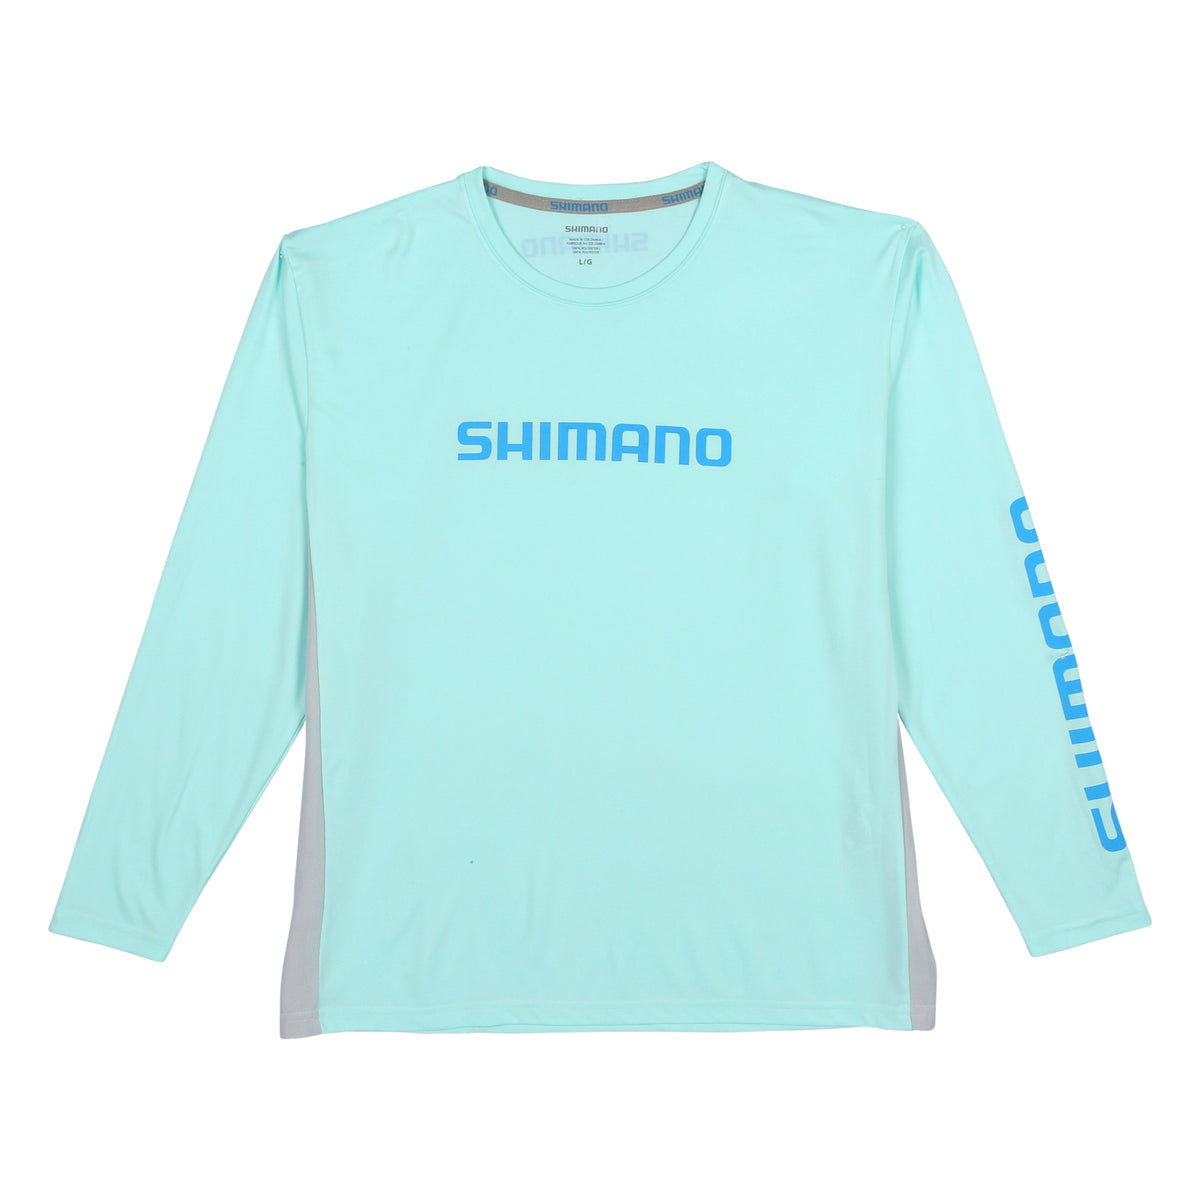 Shimano Long Sleeve Tech Tee SM / ARTICBLU